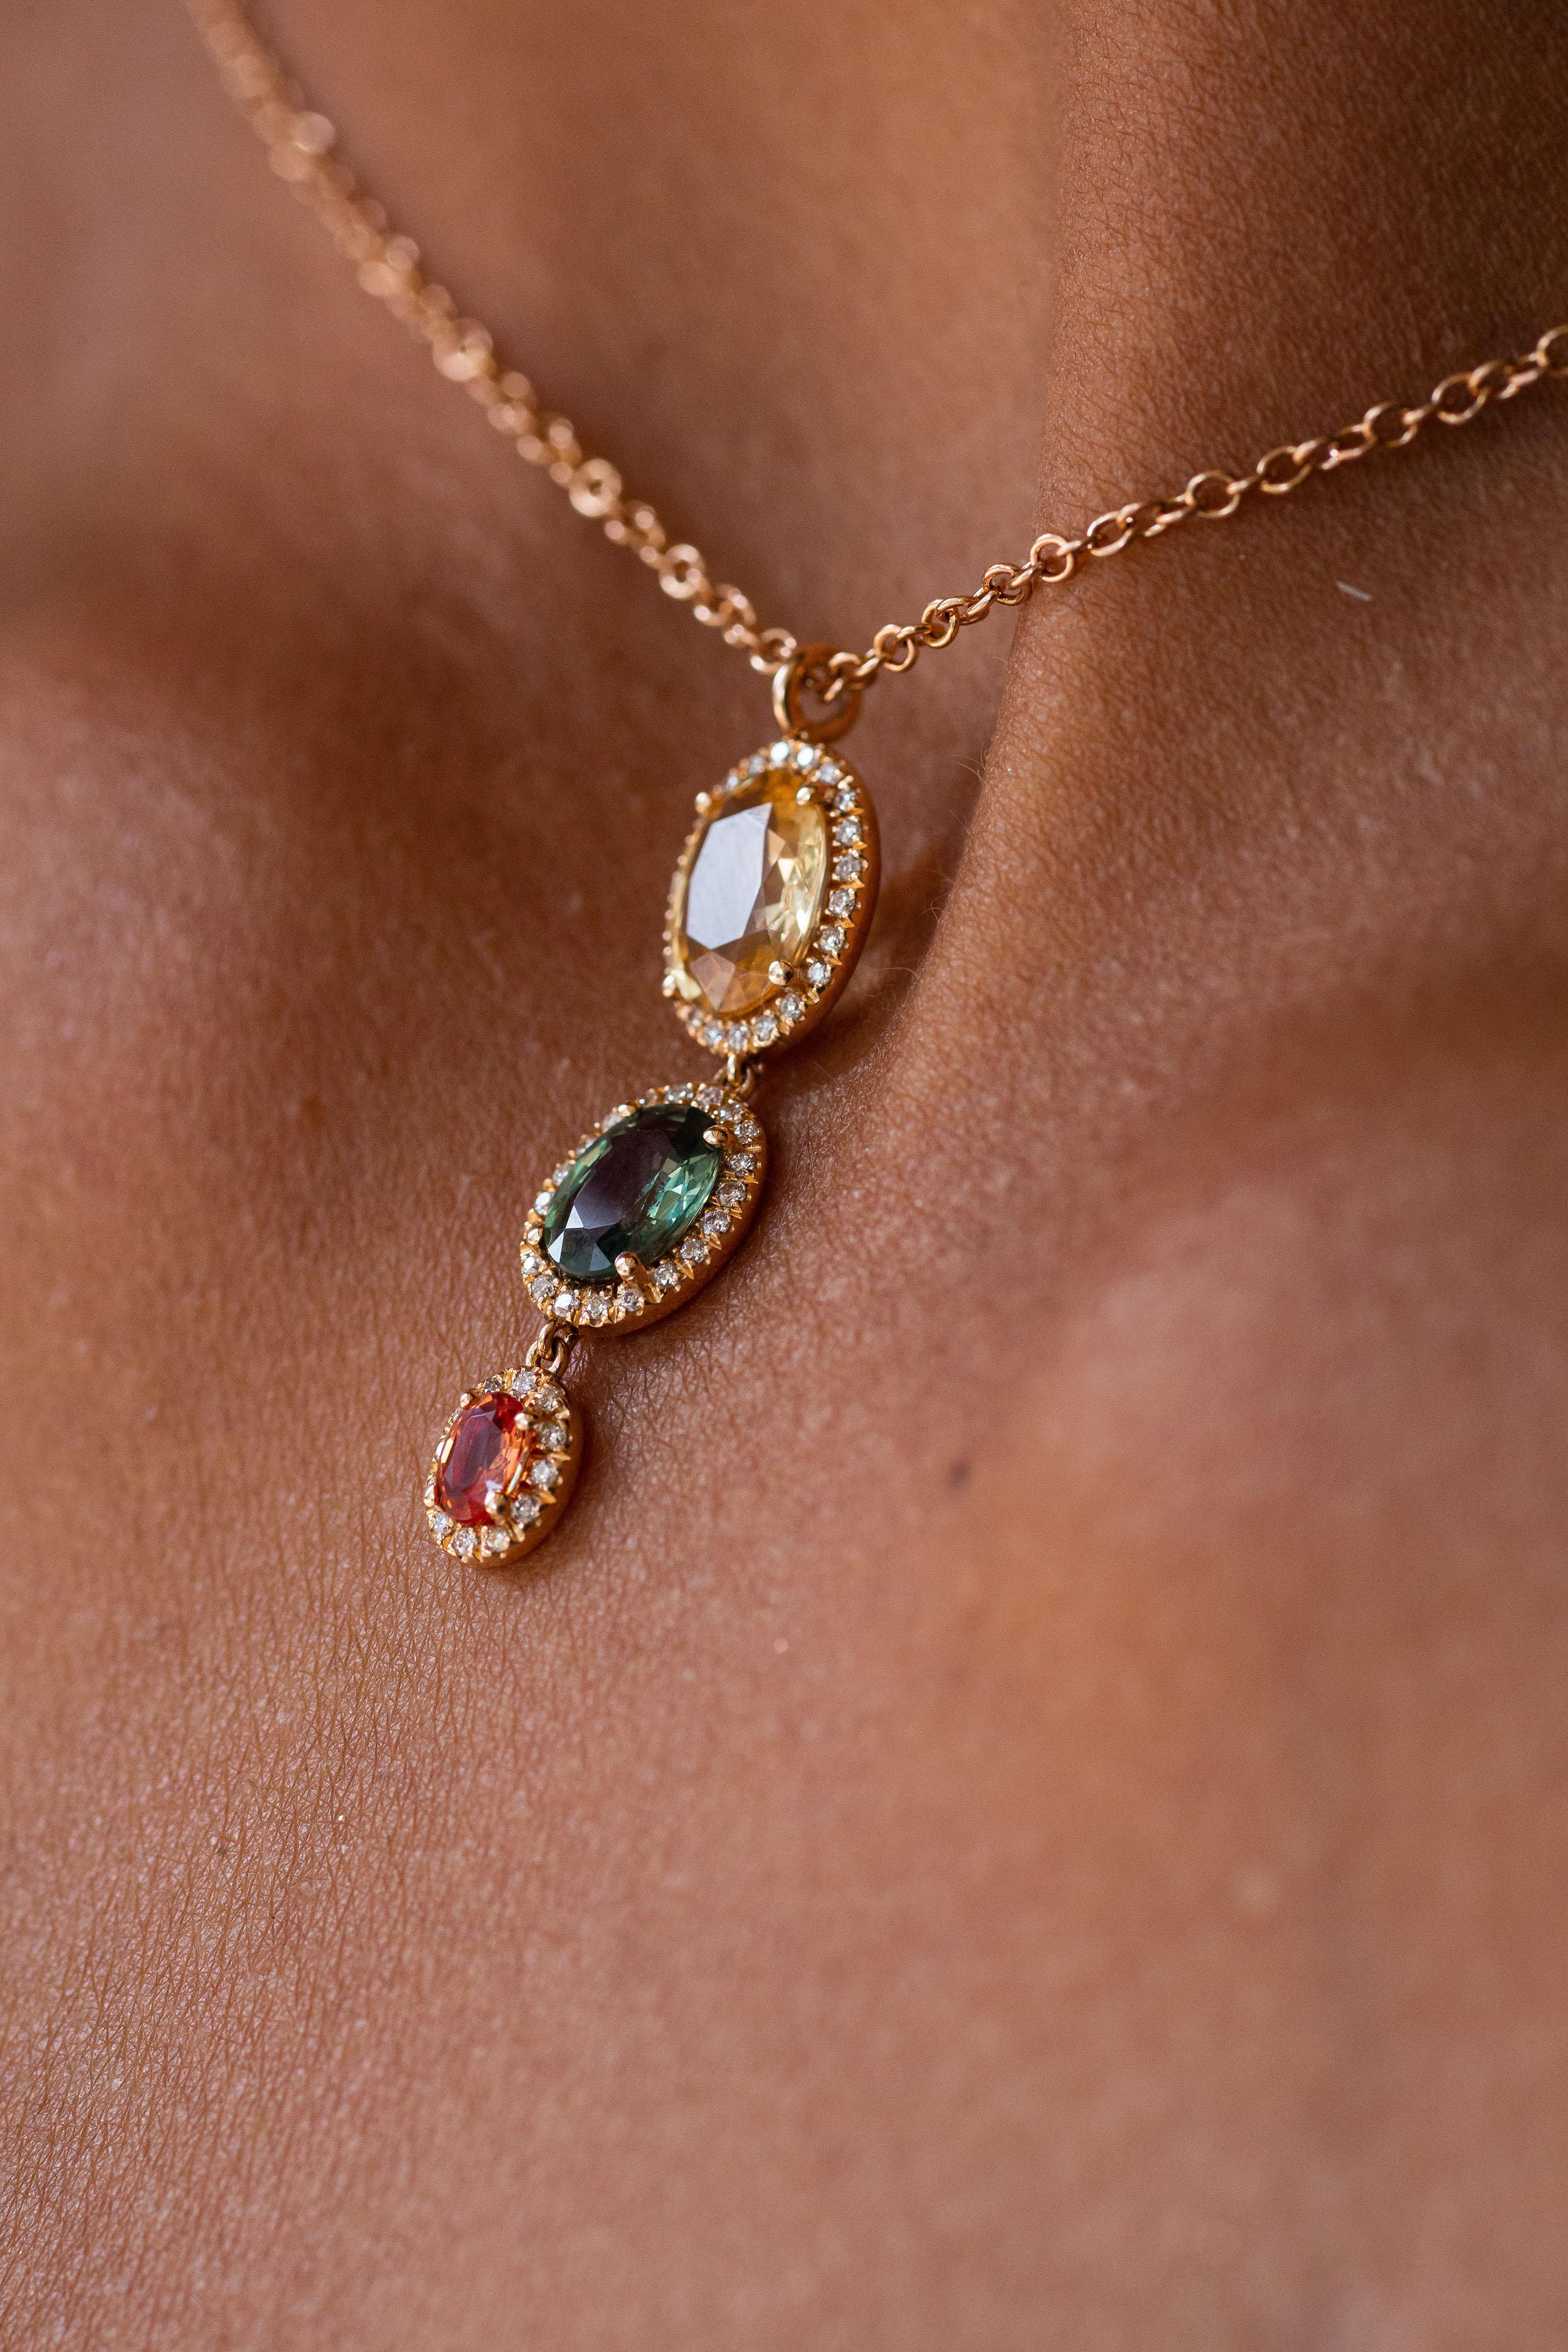 Anhänger aus 18 Karat Roségold stammt aus der Riad-Kollektion. Diese schöne Halskette besteht aus 3 ovalen, mehrfarbigen Saphiren von insgesamt 2,33 Karat und weißen Diamanten von insgesamt 0,16 Karat. Das Gesamtgewicht des Metalls beträgt 4,40 g.